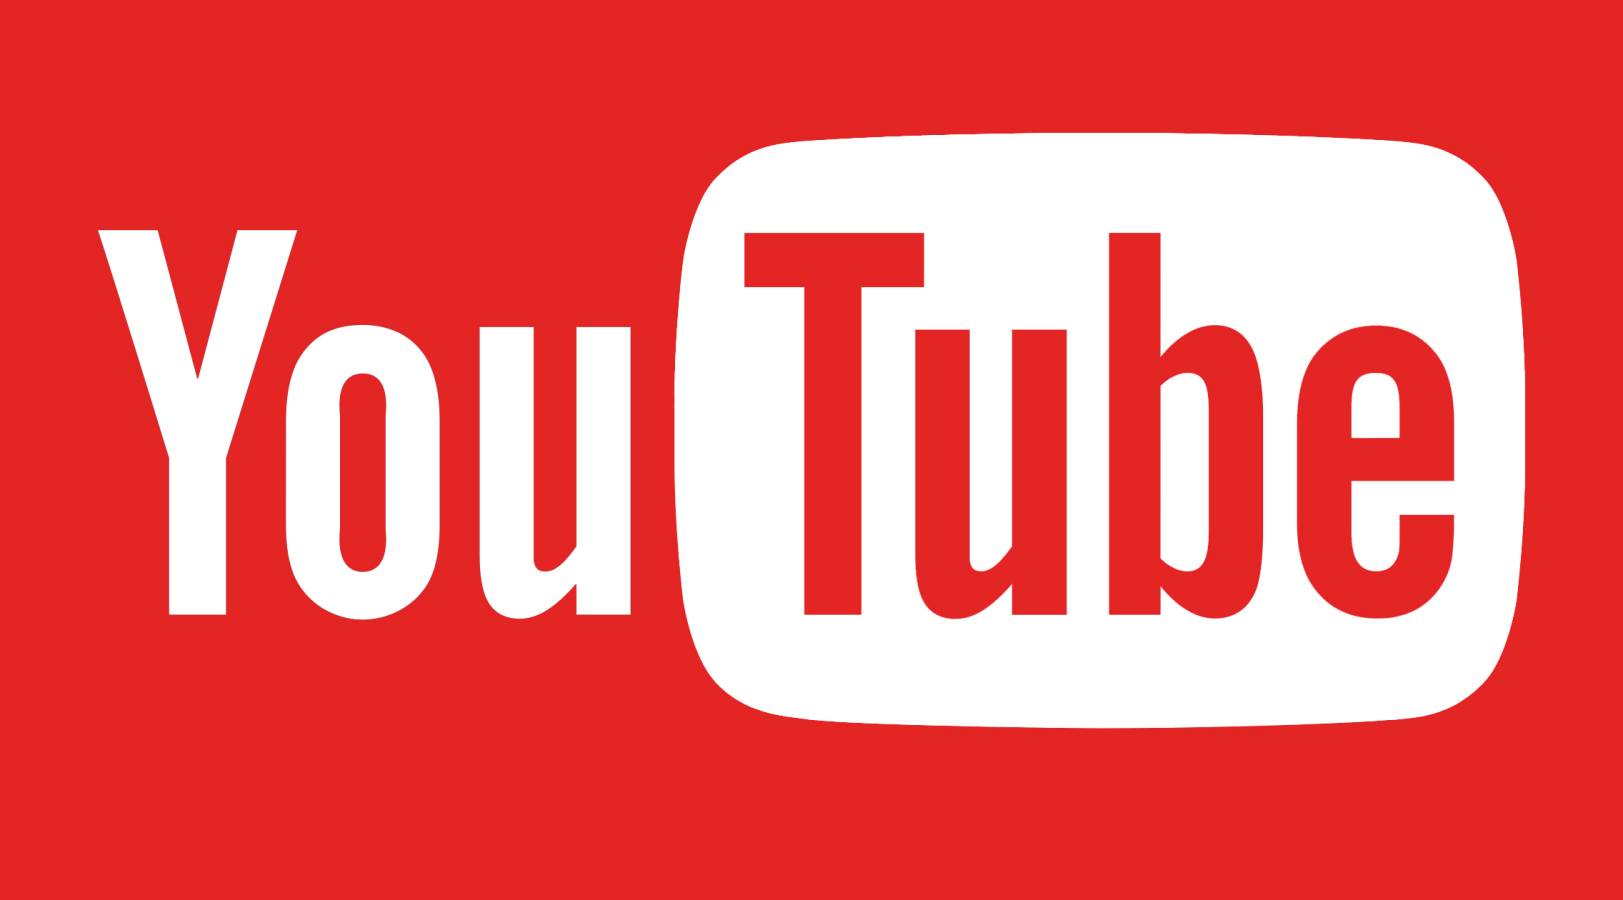 YouTube met à jour les nouvelles modifications proposées à tous les utilisateurs